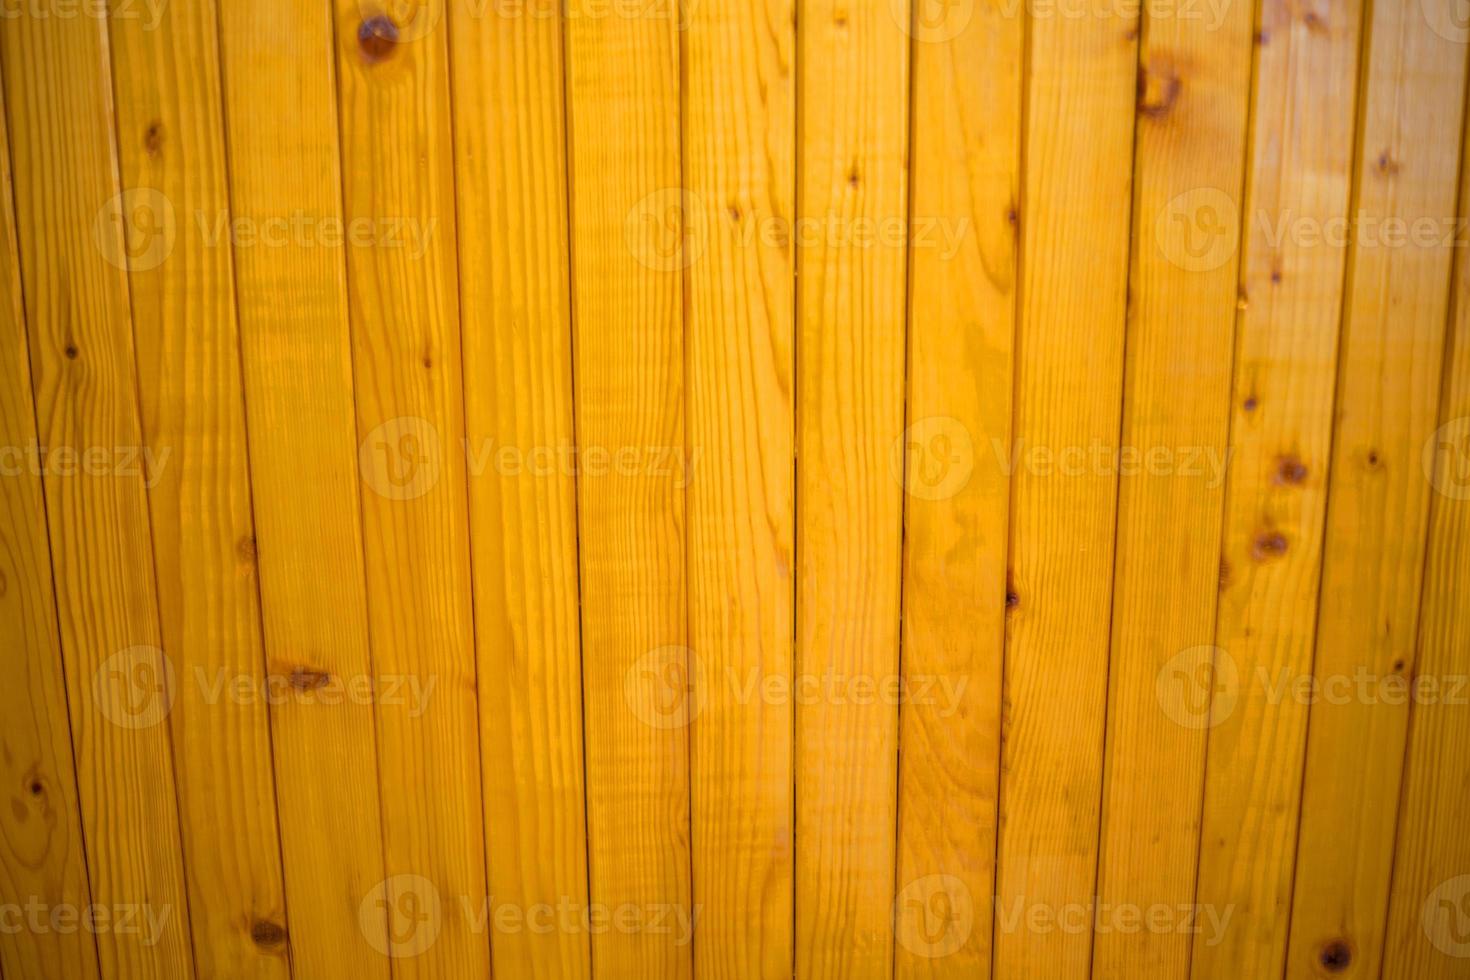 orange wood varnished fence plank texture background photo